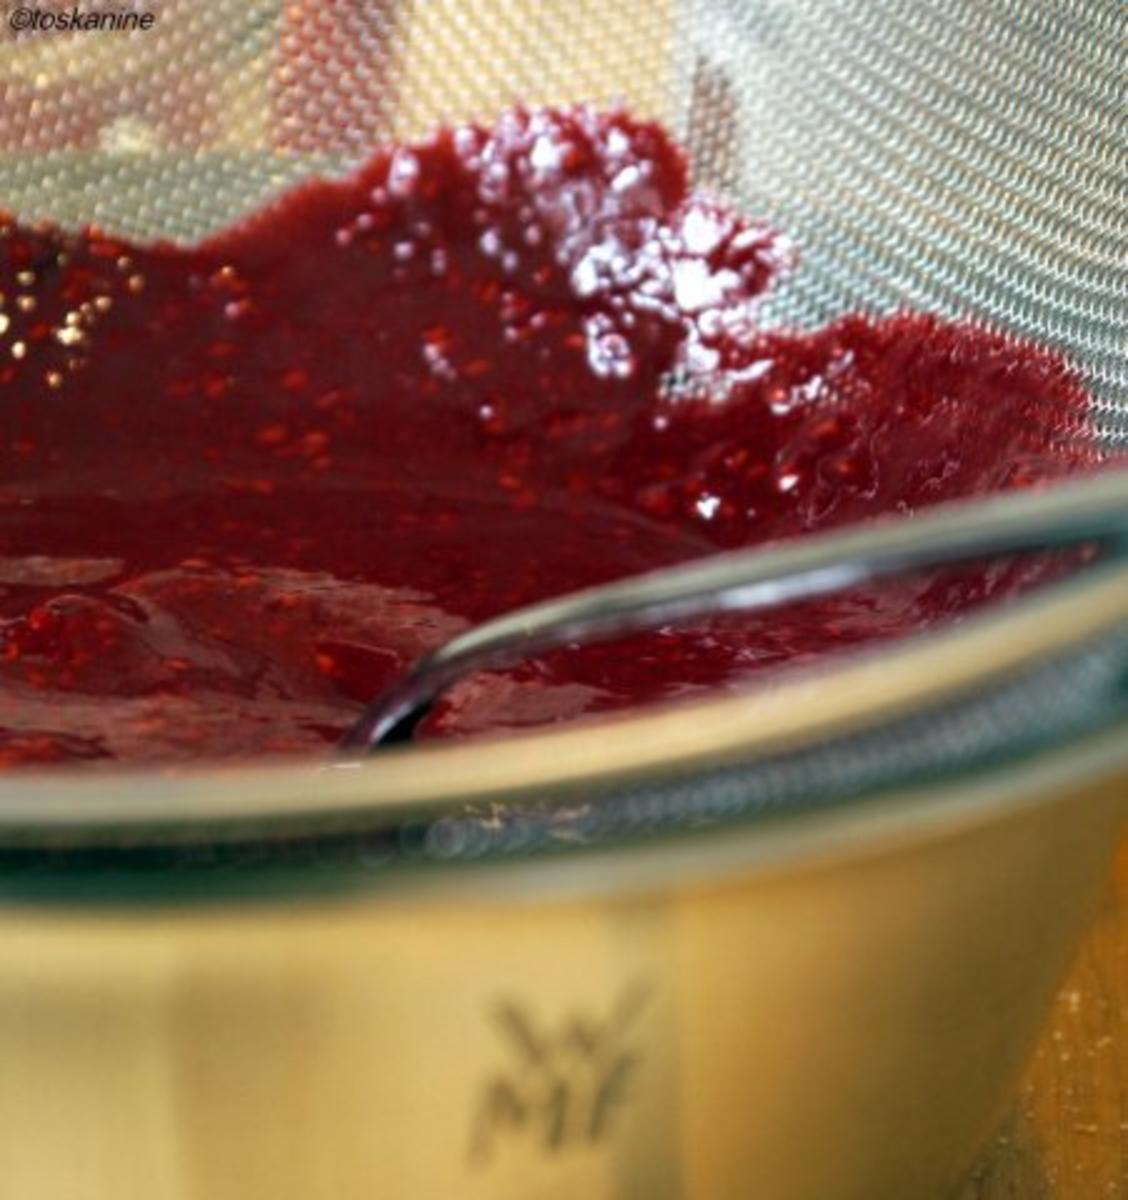 Veilchen-Joghurt auf beschwipsten Himbeeren - Rezept - Bild Nr. 4